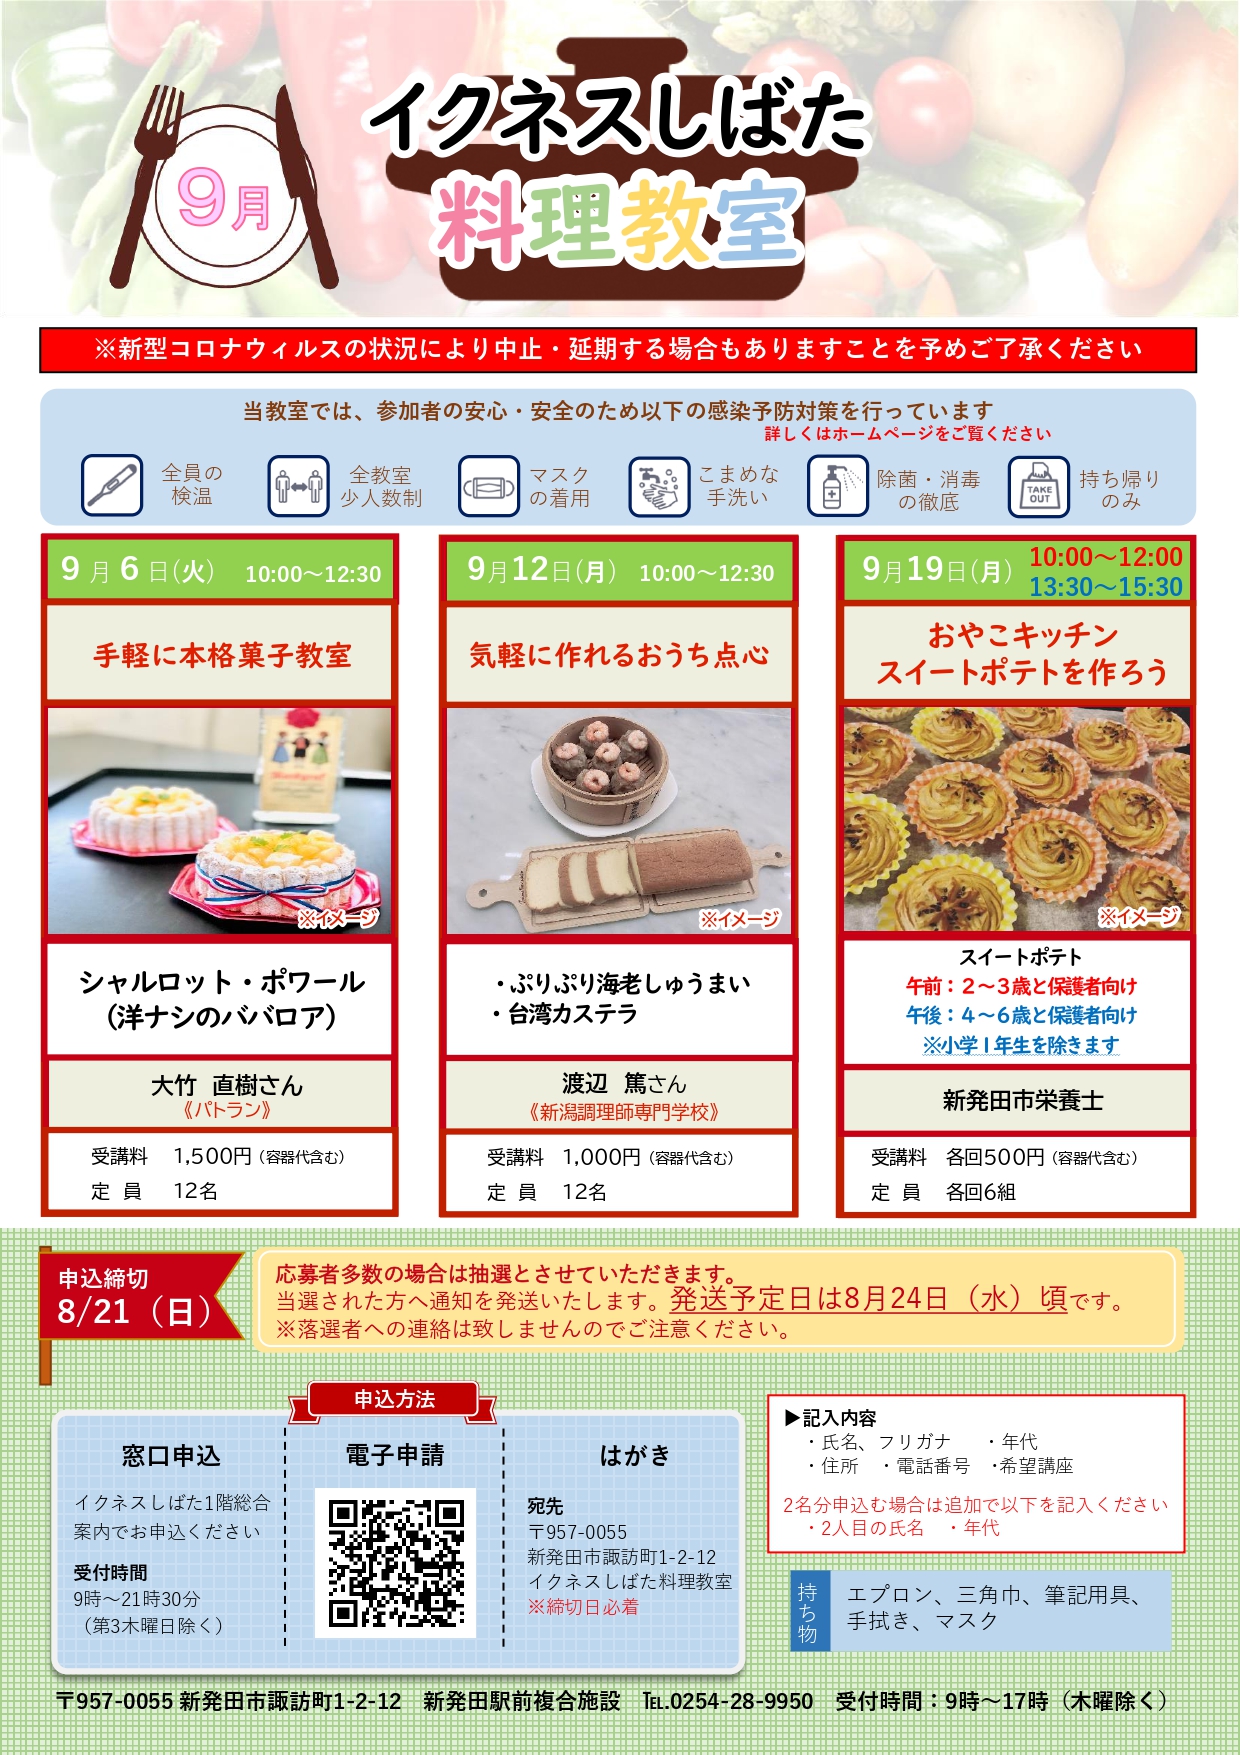 9月料理教室チラシ_page-0001.jpg